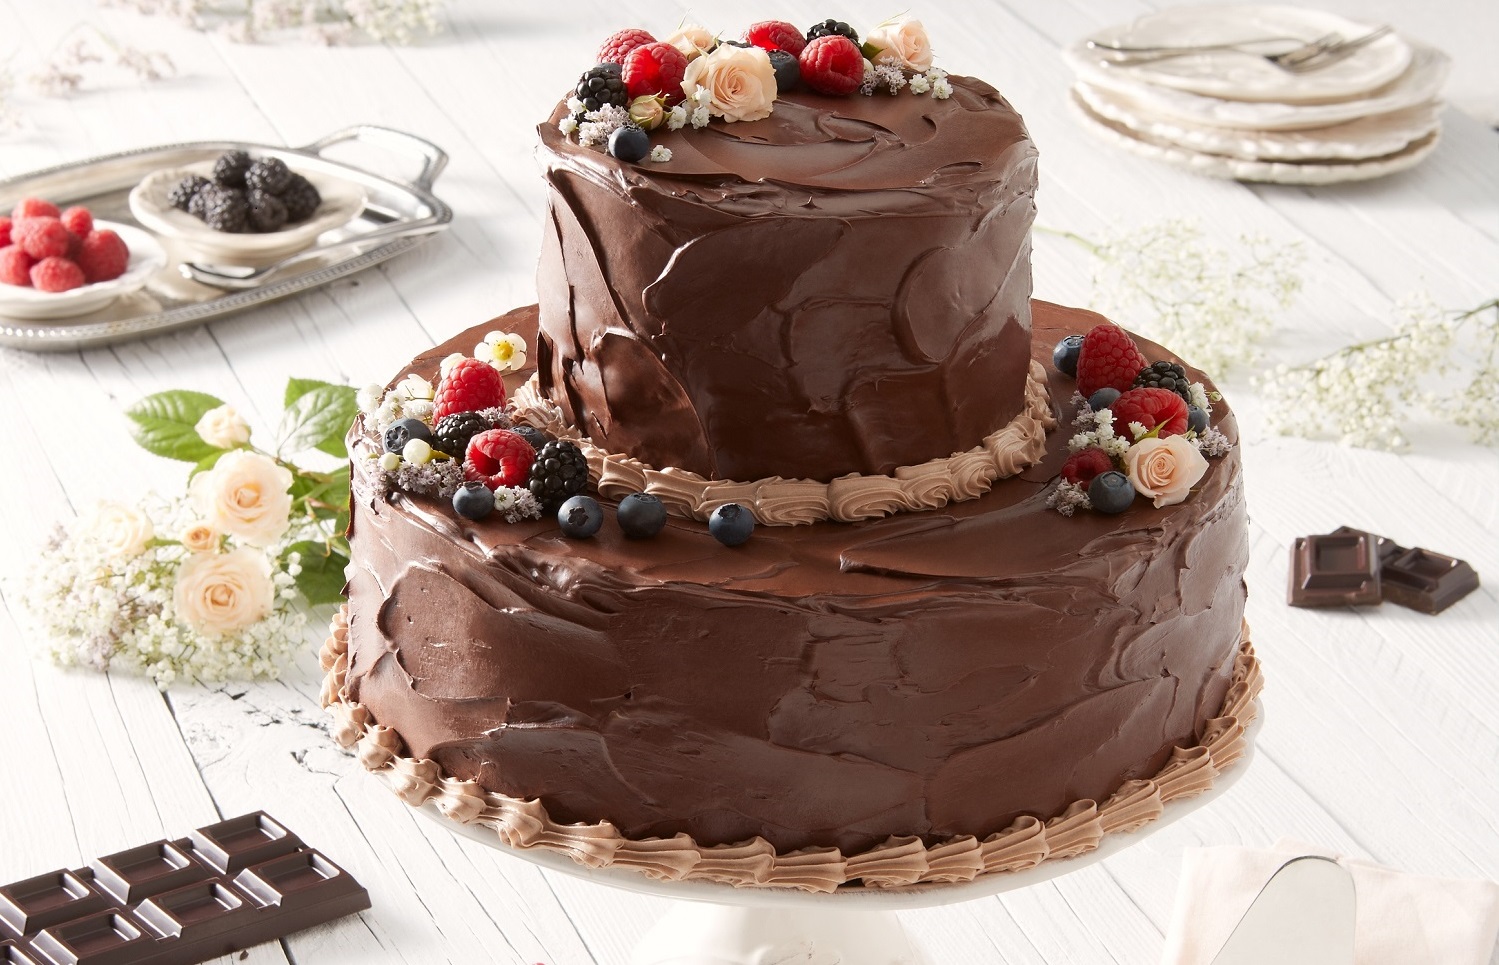 La wedding cake al cioccolato ispirata al matrimonio di Harry e Meghan